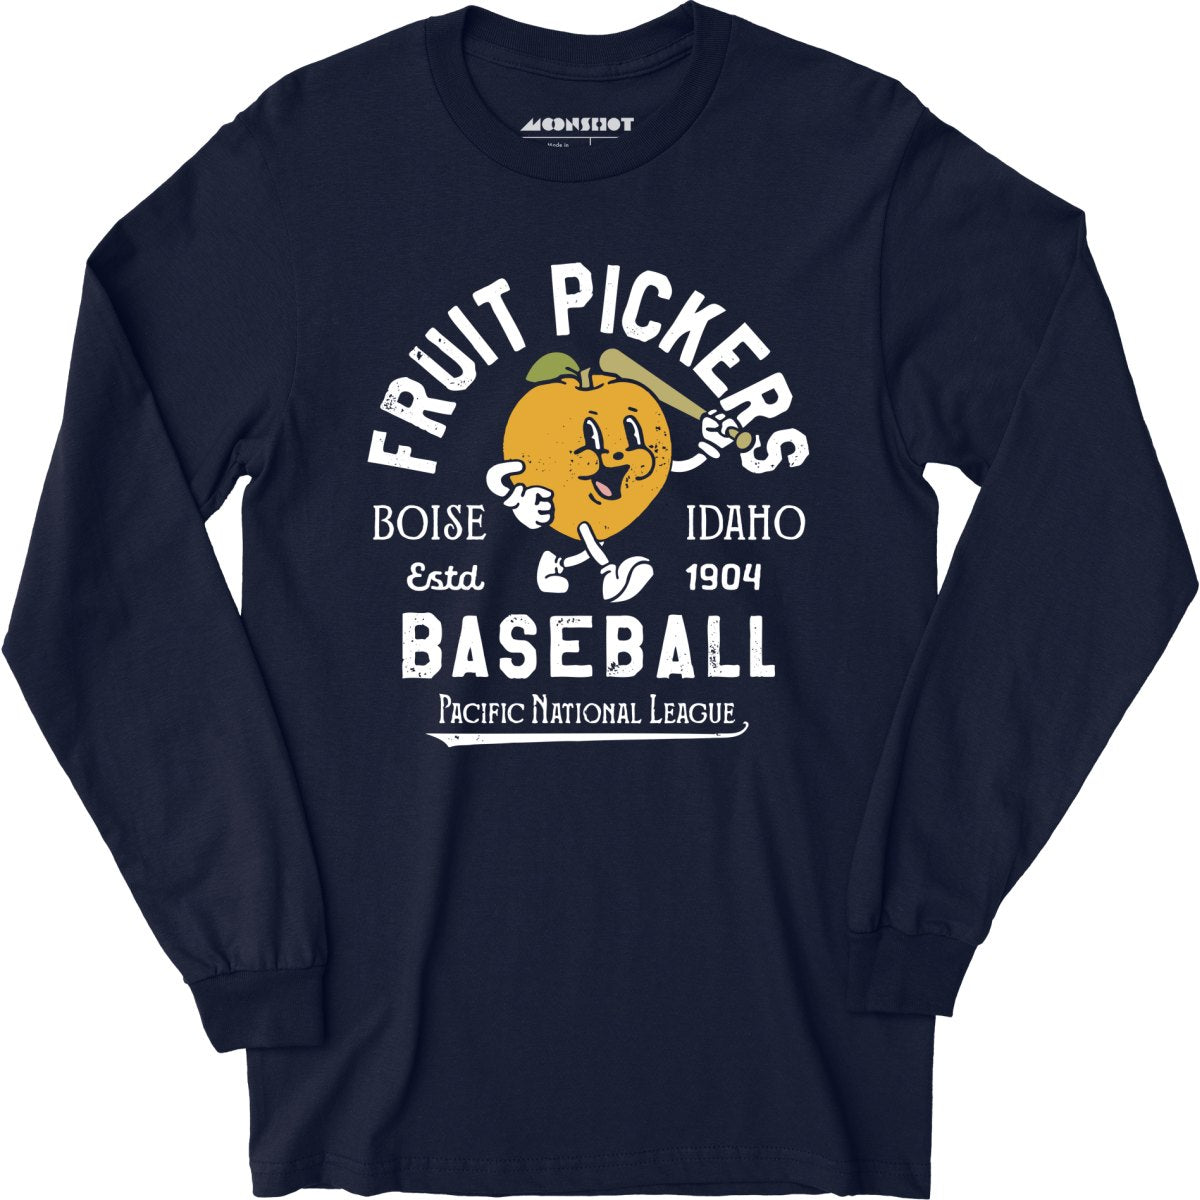 Boise Fruit Pickers - Idaho - Vintage Defunct Baseball Teams - Long Sleeve T-Shirt